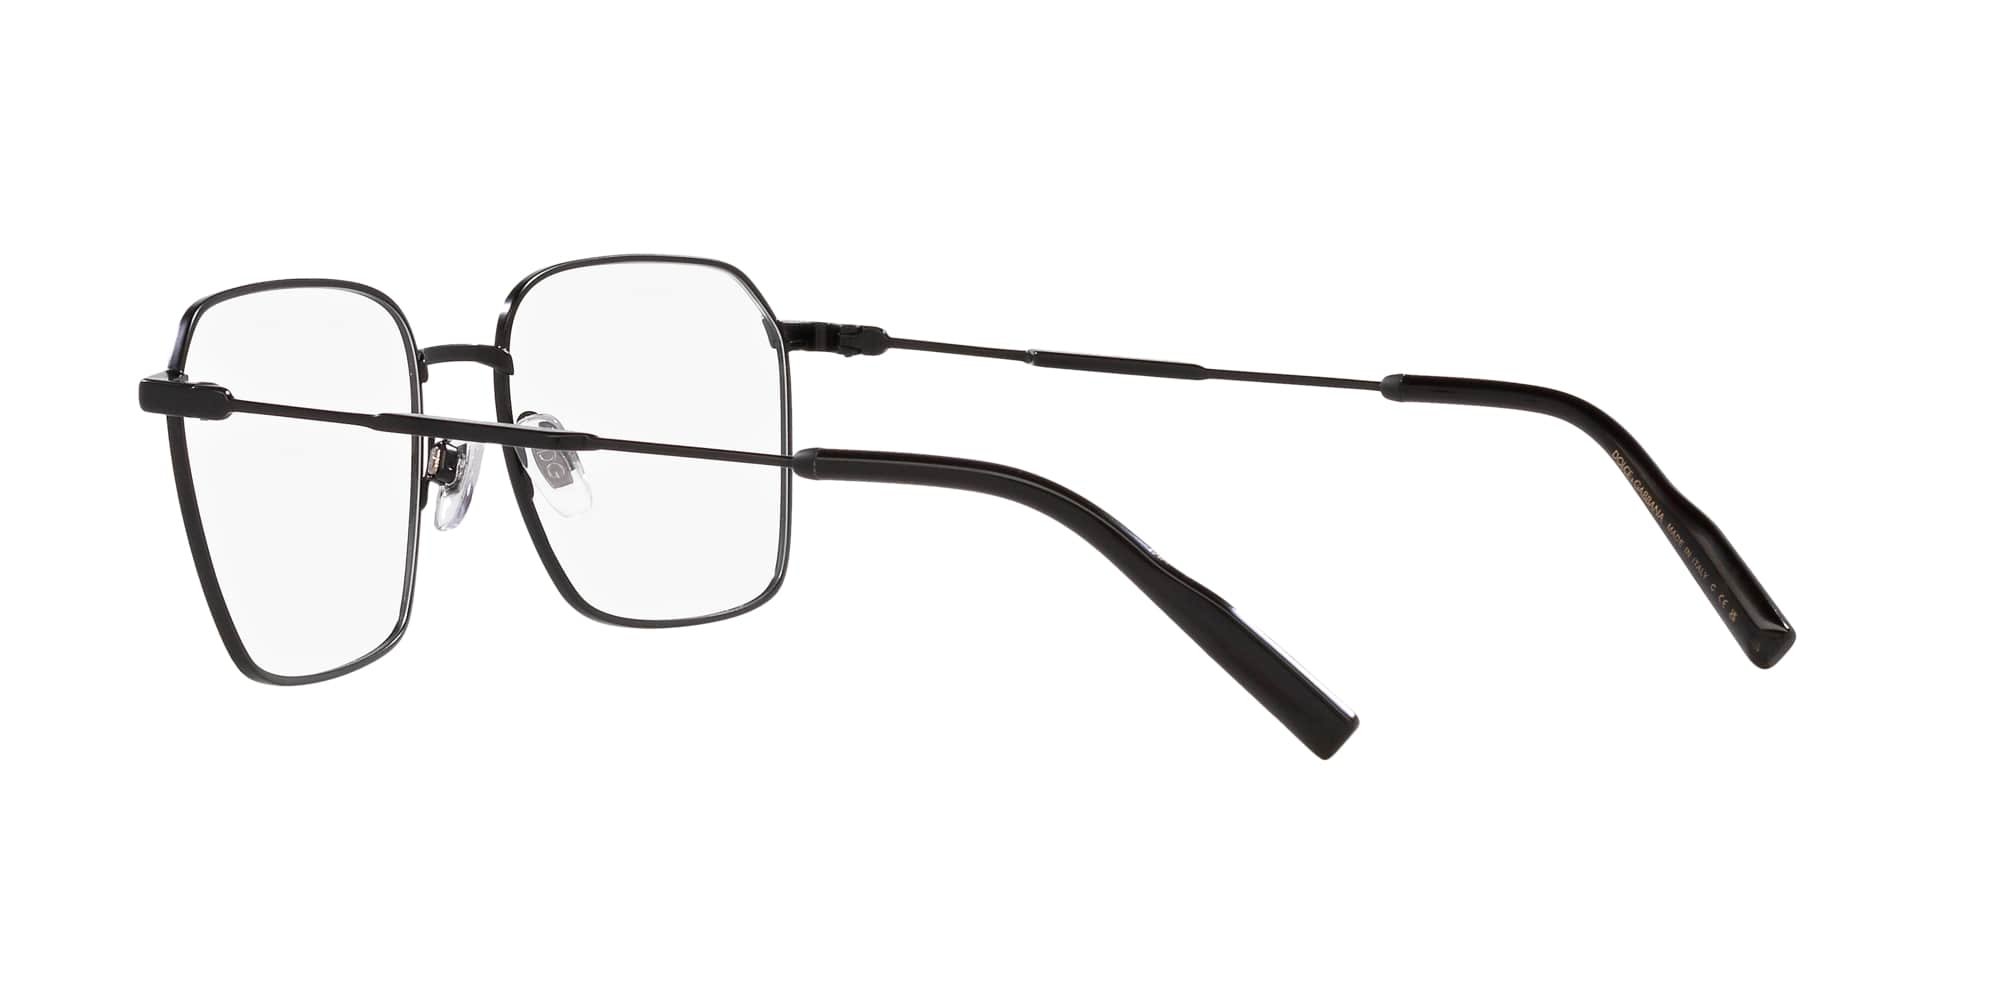 Das Bild zeigt die Korrektionsbrille DG1350 1106 von der Marke D&G in schwarz.